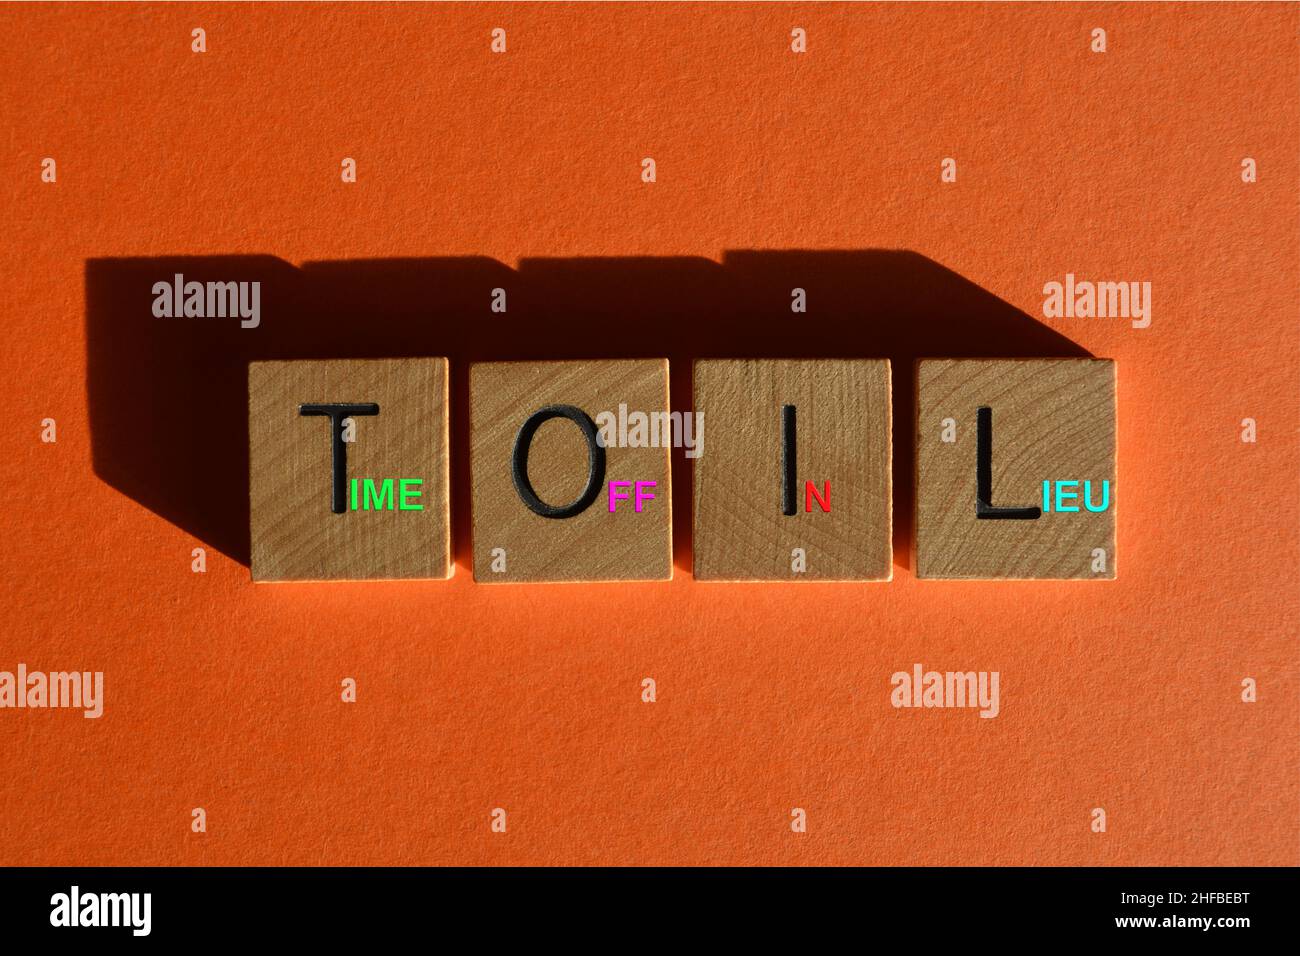 Toil, Akronym für Time Off in Lieu, Wörter auf hölzernen Buchstaben auf orangefarbenem Hintergrund Stockfoto